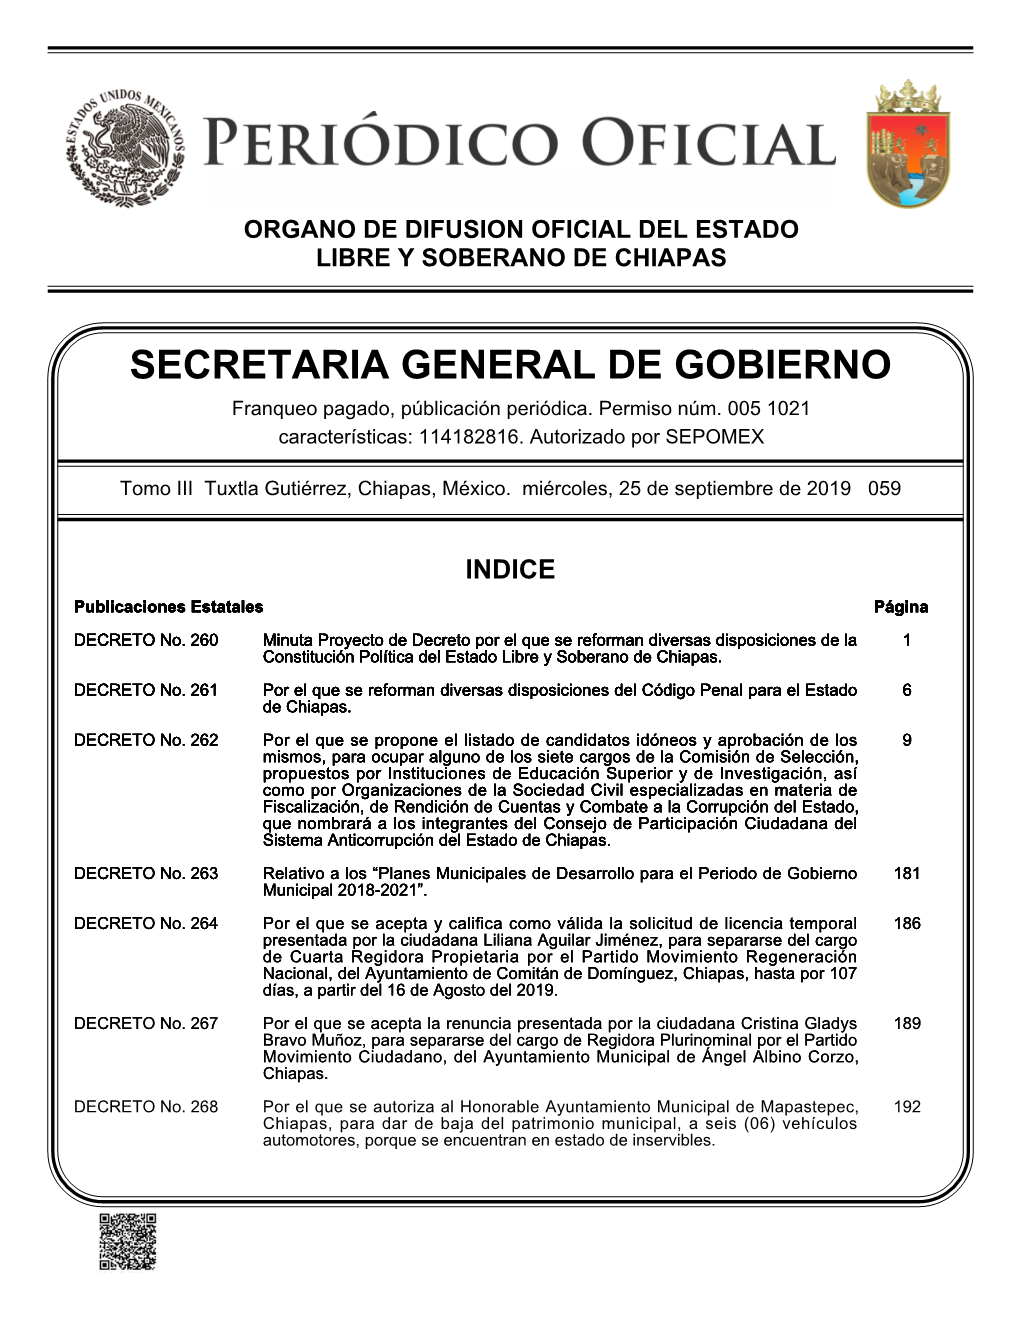 Periódico Oficial 059-Planes Municipales De Desarrollo Para El Periodo De Gobierno Municipal 2018-2021.Pdf